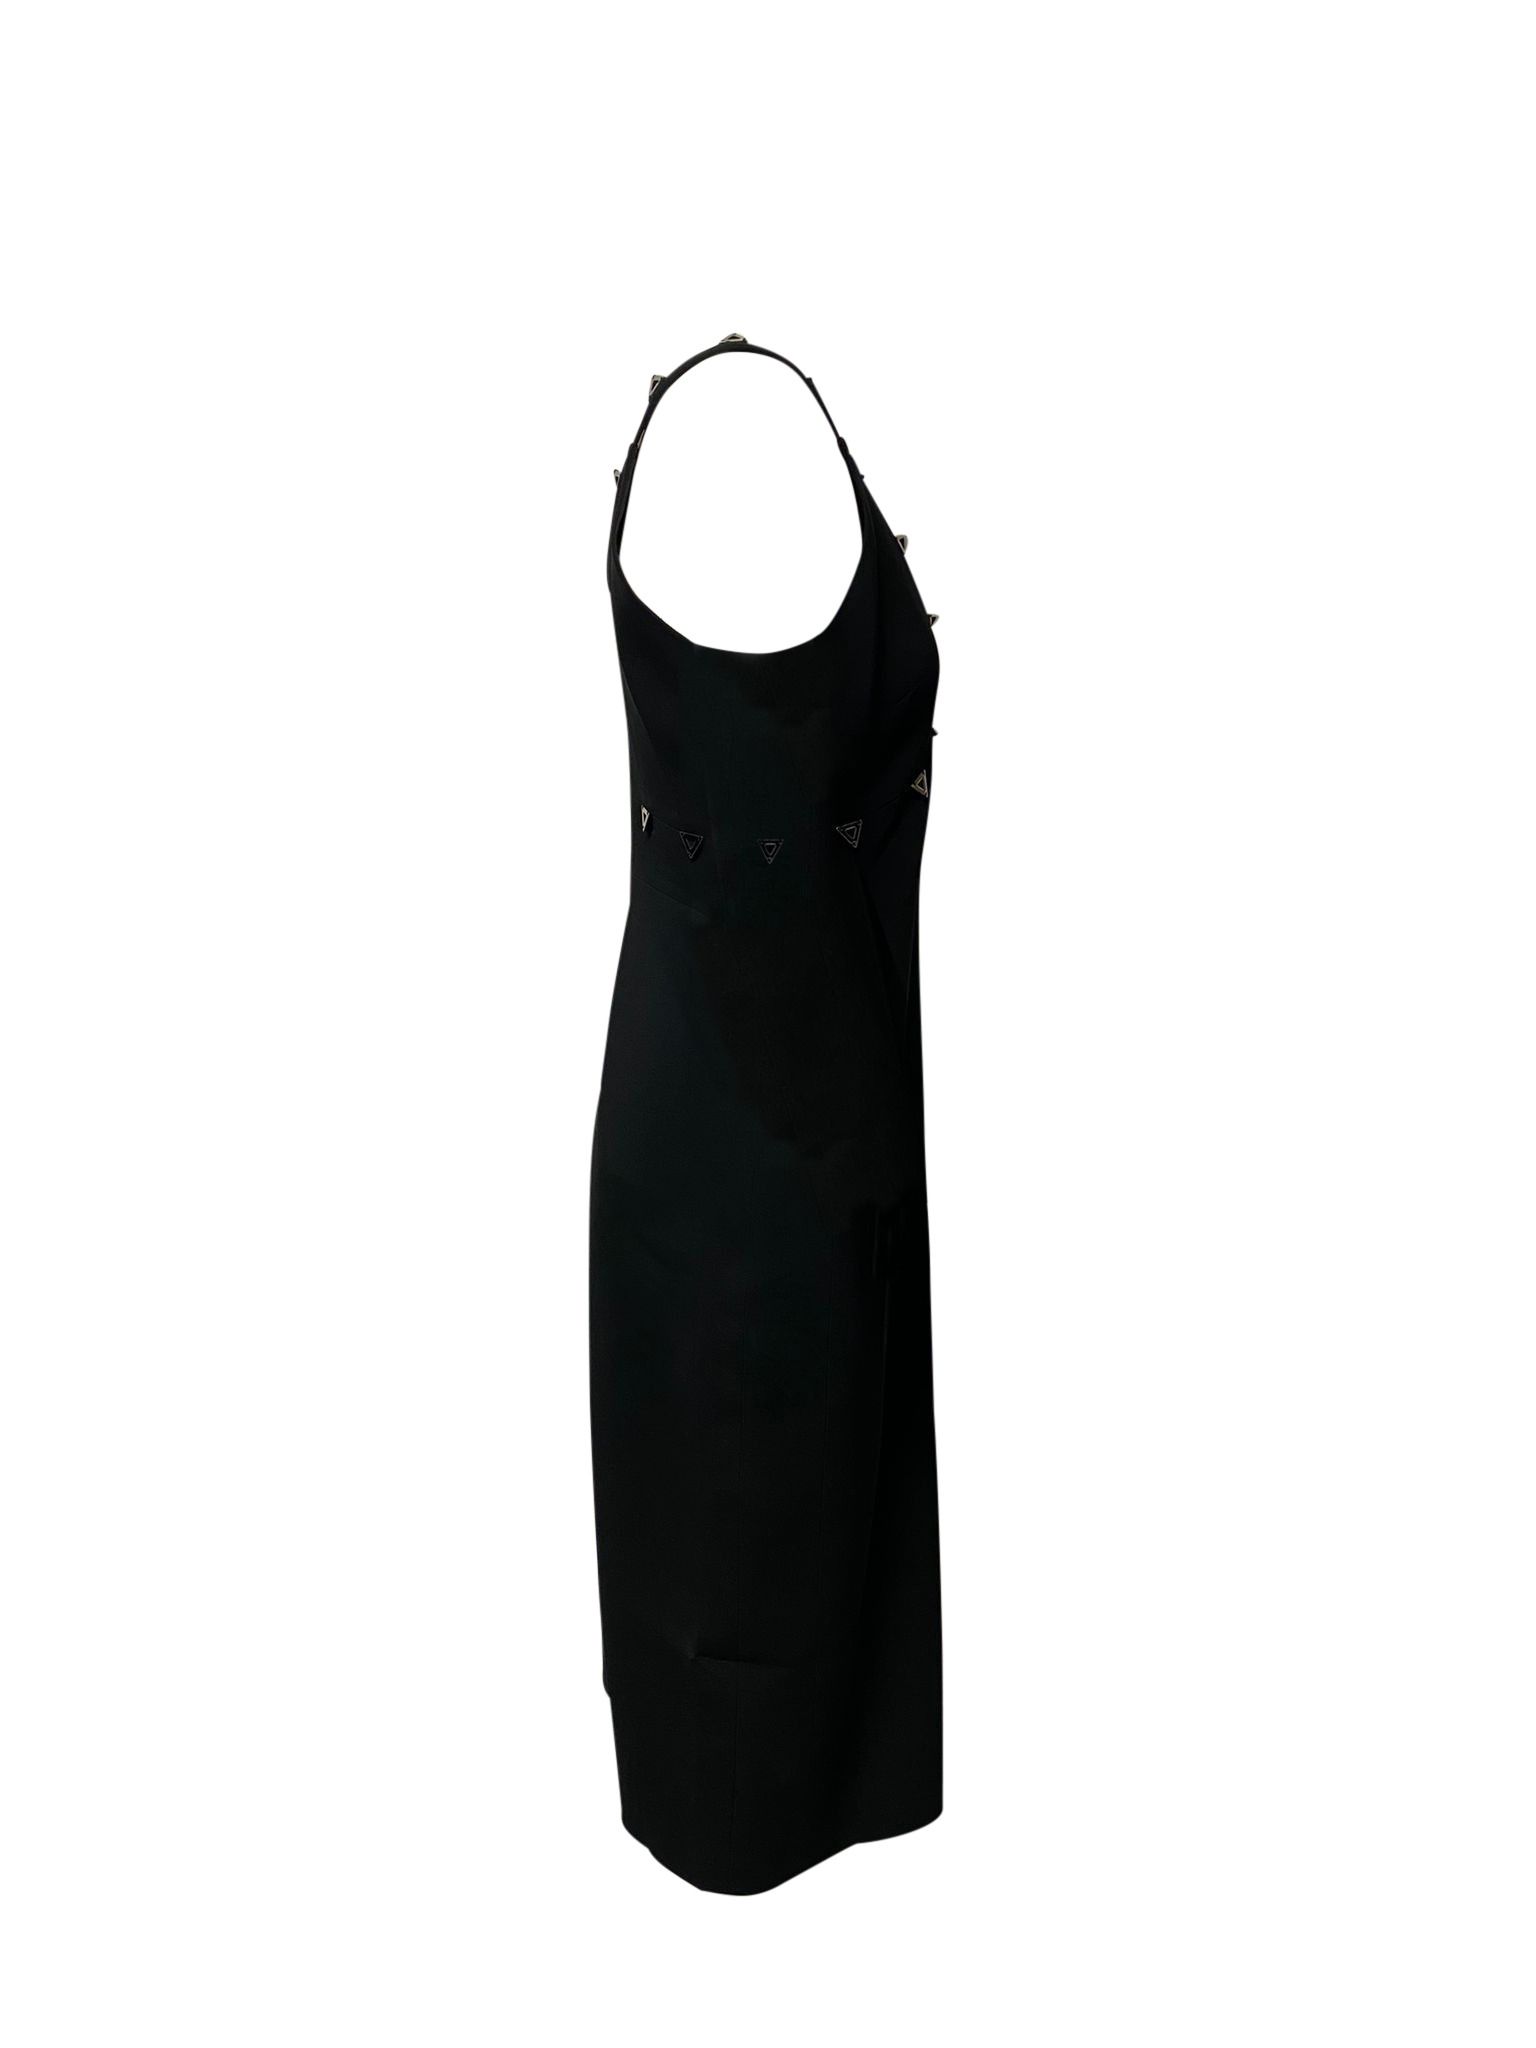 Embellished Low Neckline Dress in Black Acetate